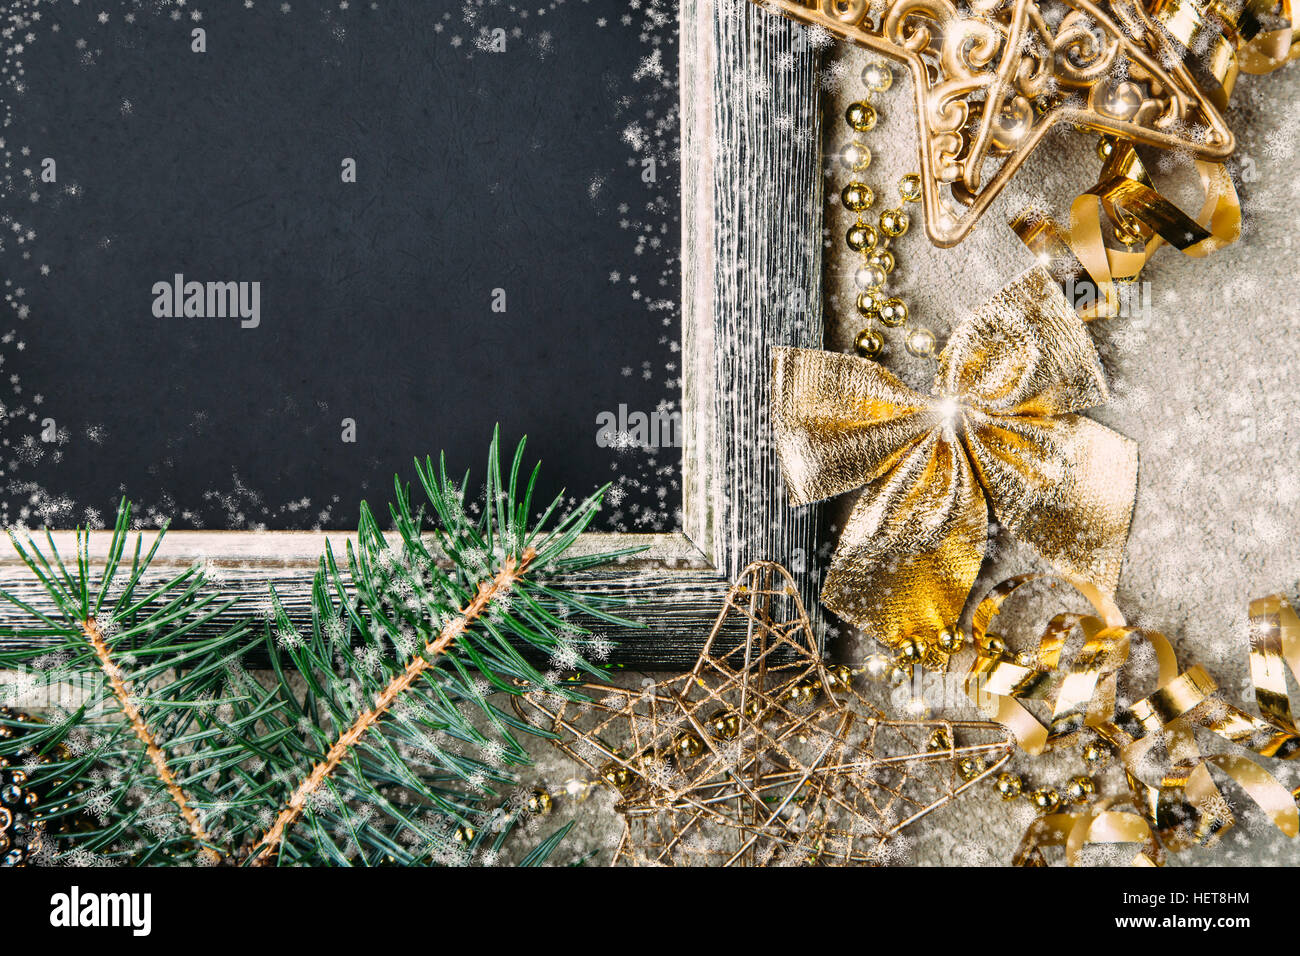 Golden décorations de Noël et des branches de sapin sur fond noir mat, nouveau cadre de l'année, vue du dessus, copy space Banque D'Images